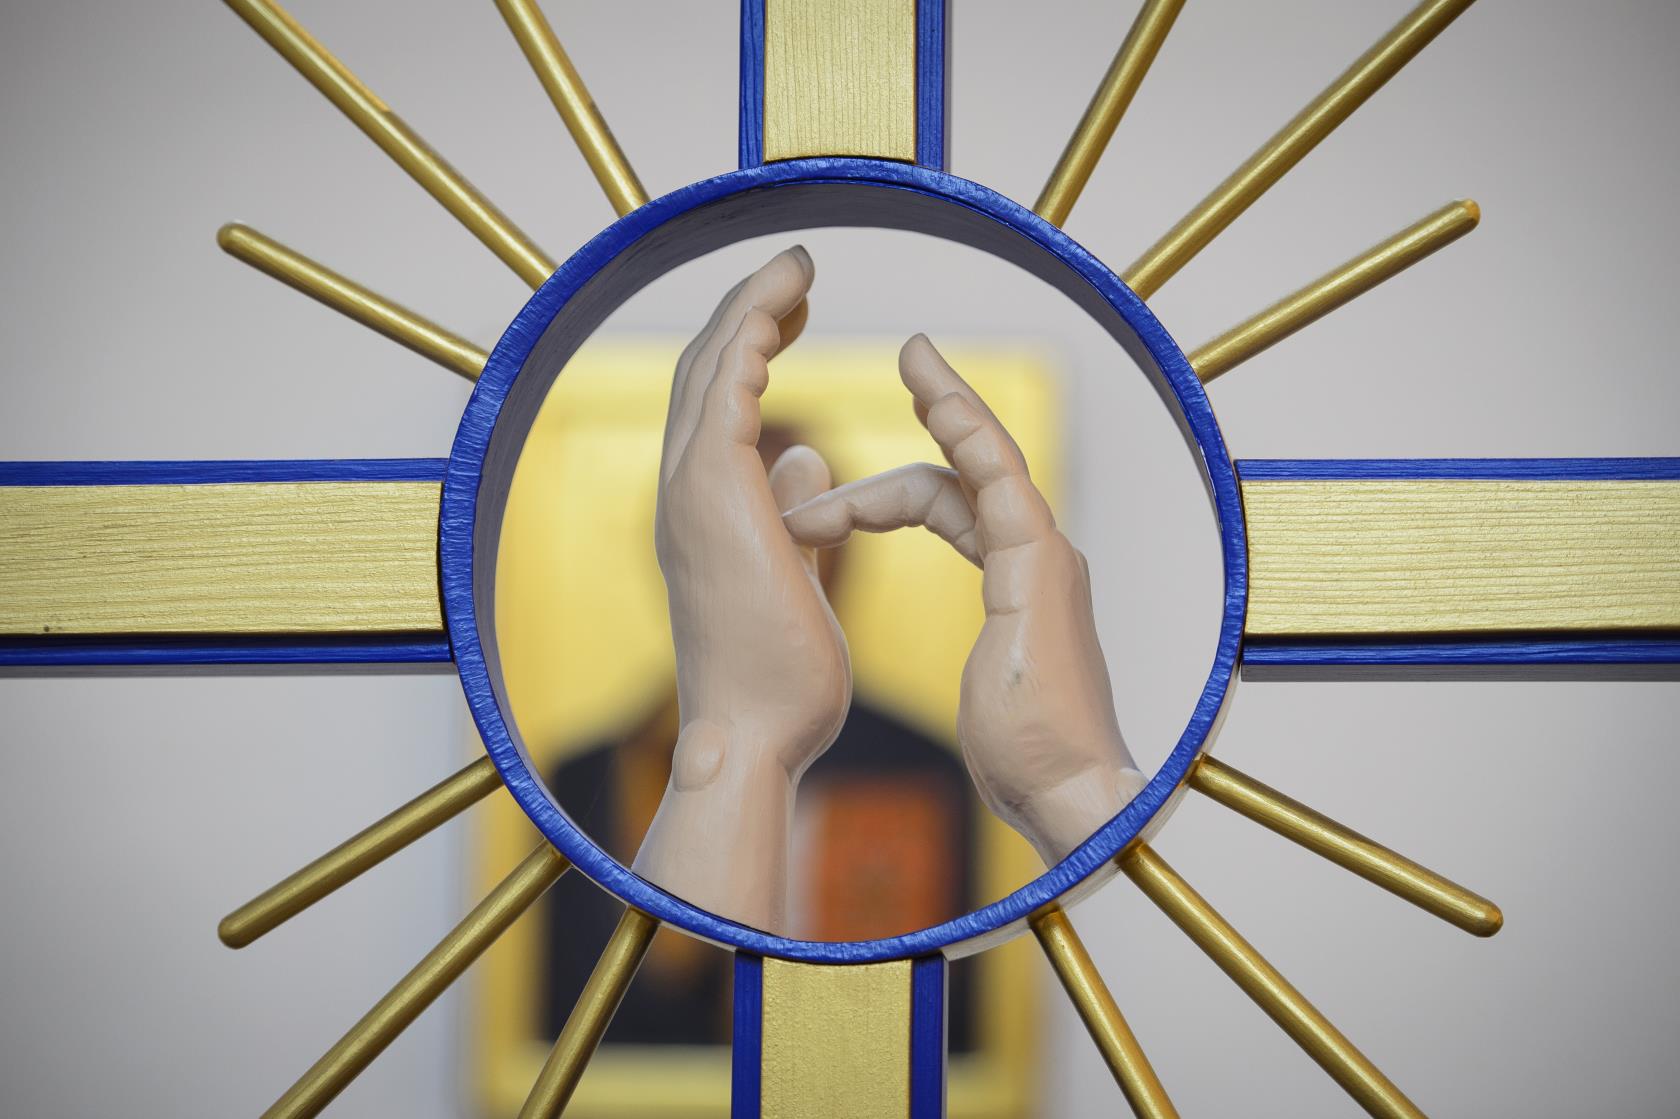 Närbild på ett altarkors med två händer som talar teckenspråk.